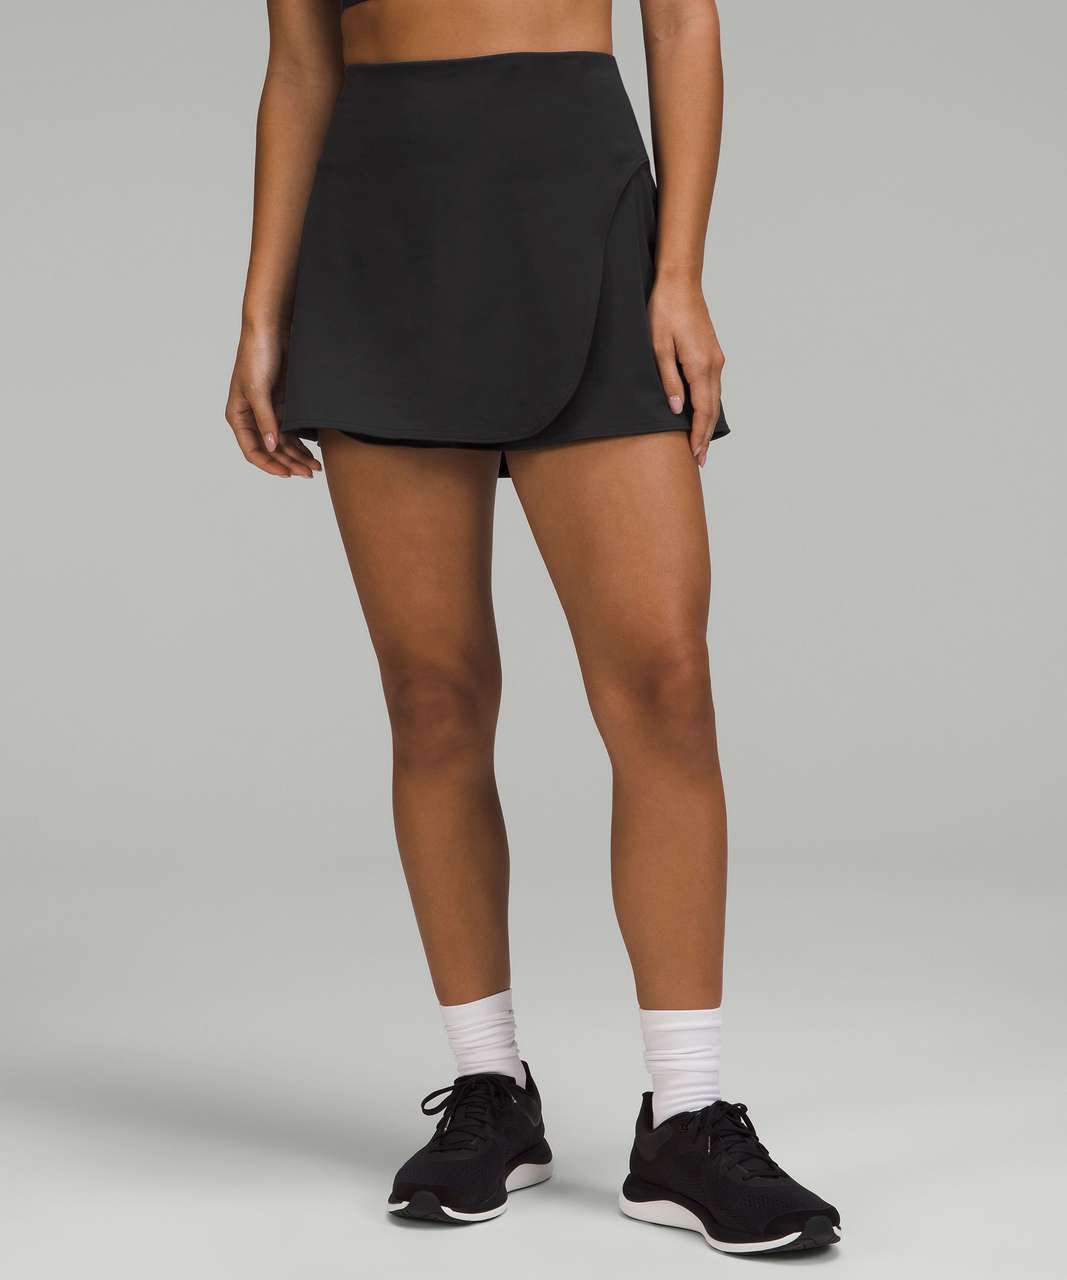 Lululemon Tennis and Golf High-Rise Wrap Skirt - Black